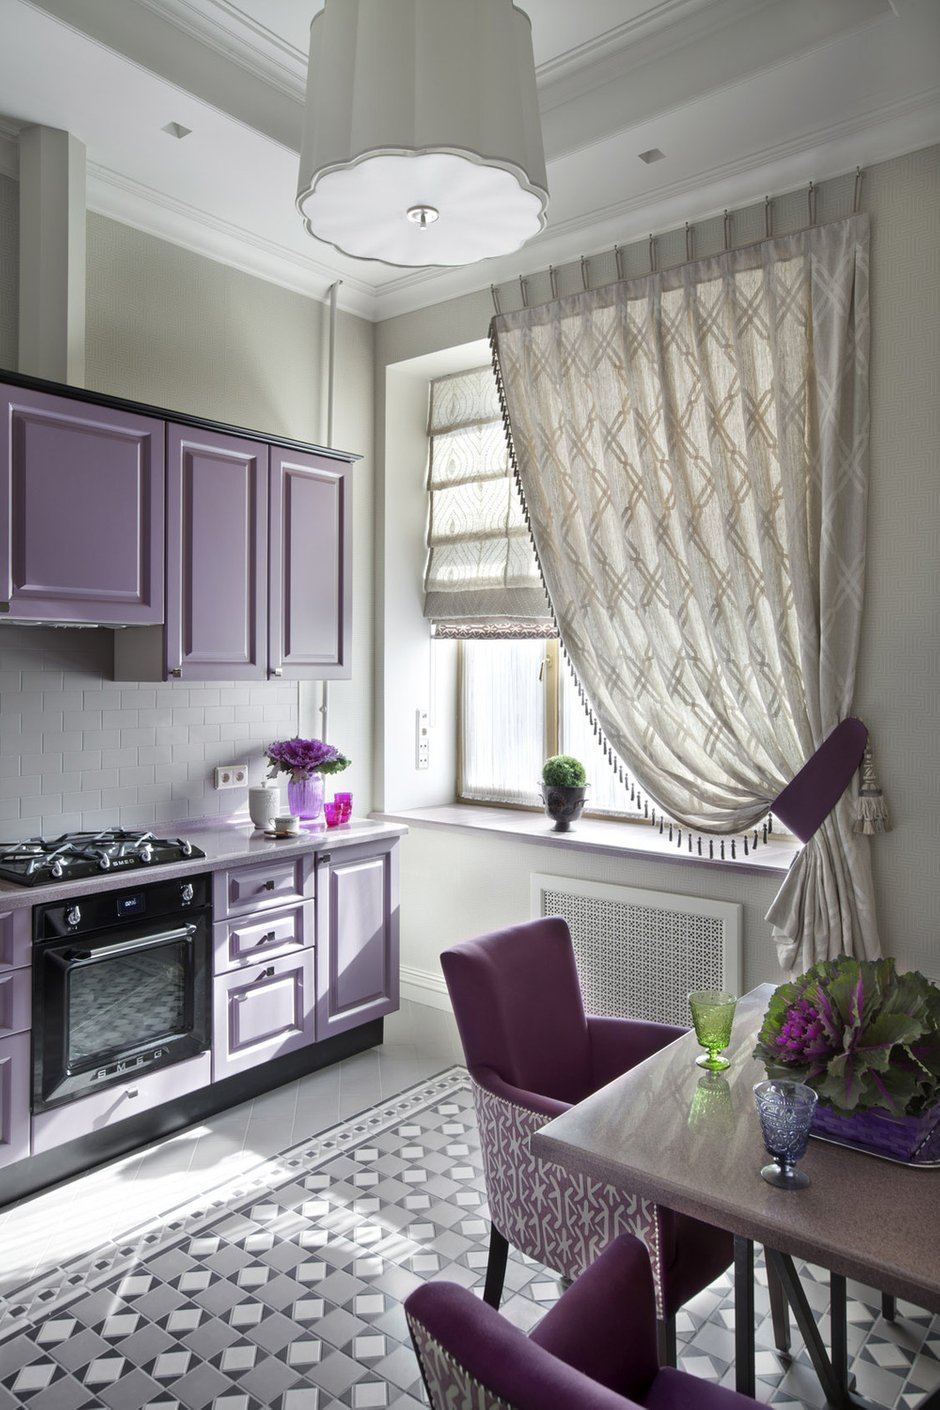 Сочный фиолетовый оттенок кухни создает приподнятое настроение в хмурые осенне-зимние вечера.